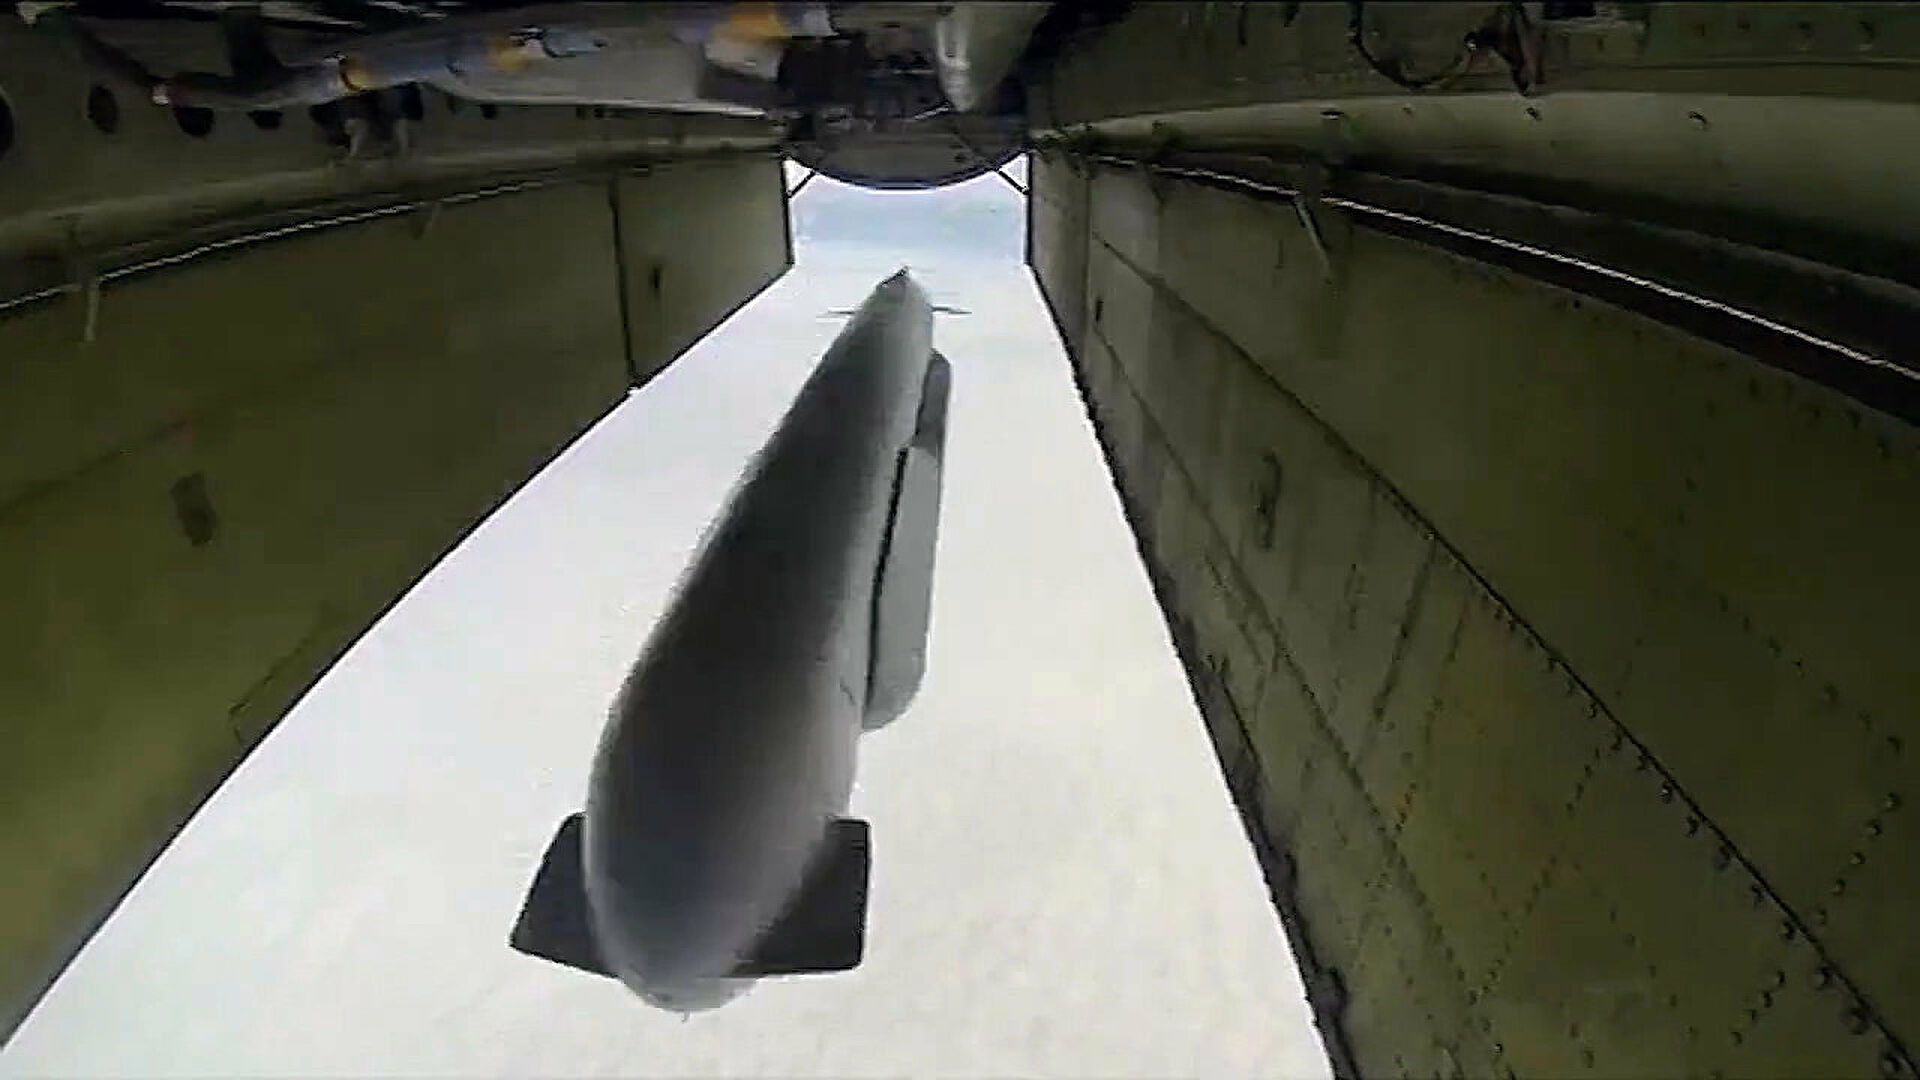 X69 ракета крылатая. Х-95 ракета гиперзвуковая. Х-555 Крылатая ракета. Х-101, «Калибр». X555 ракета.